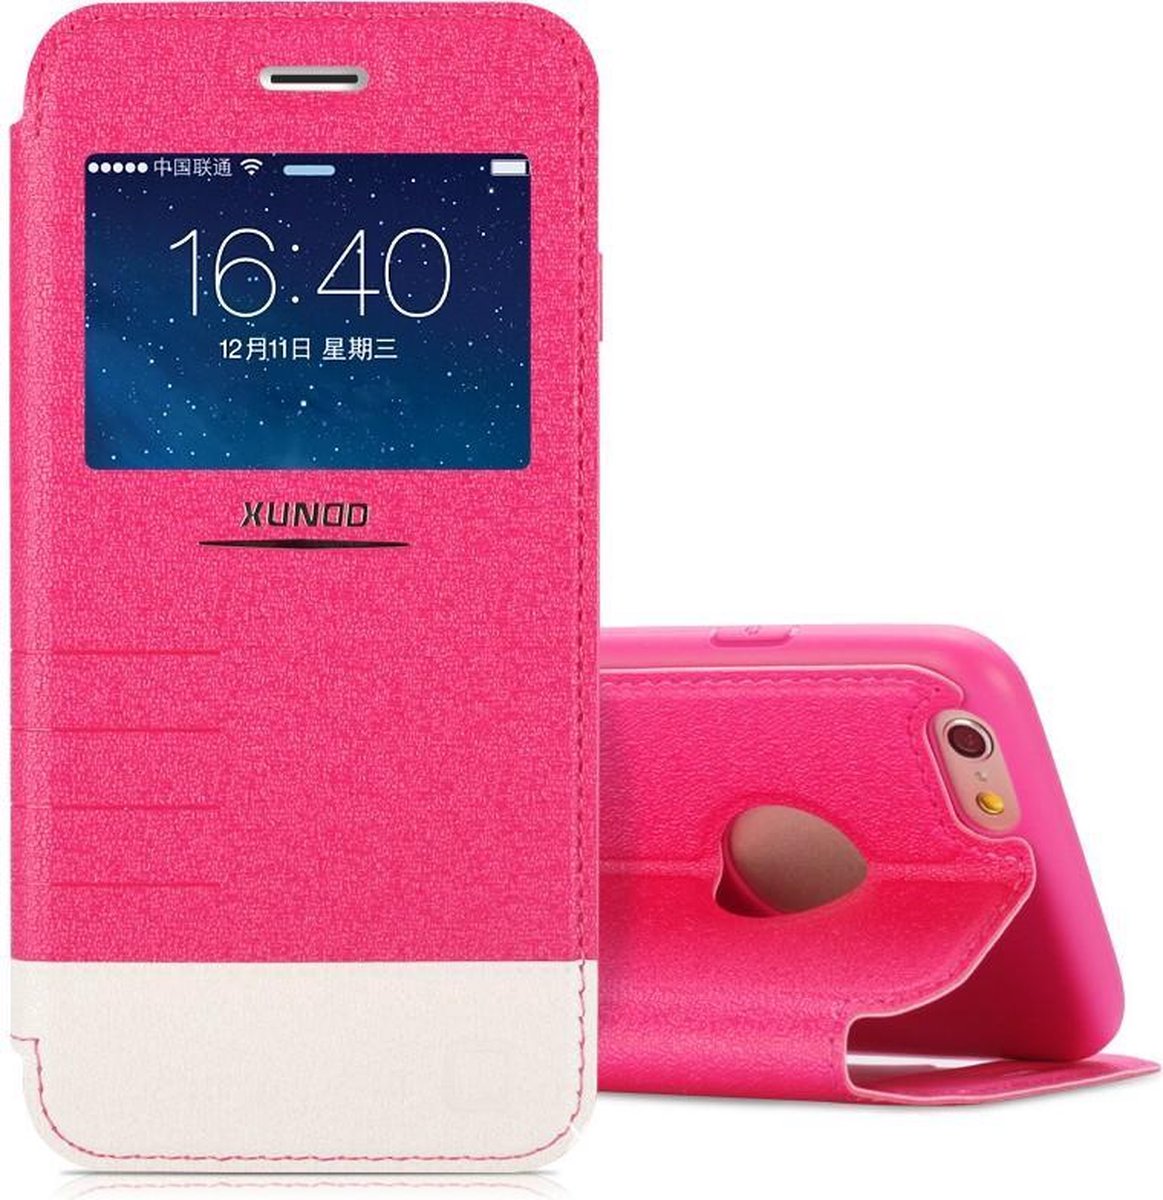 Xundd Fundas window view flip Case Cover Hoesje Voor iPhone 6 Plus Pink / Roze